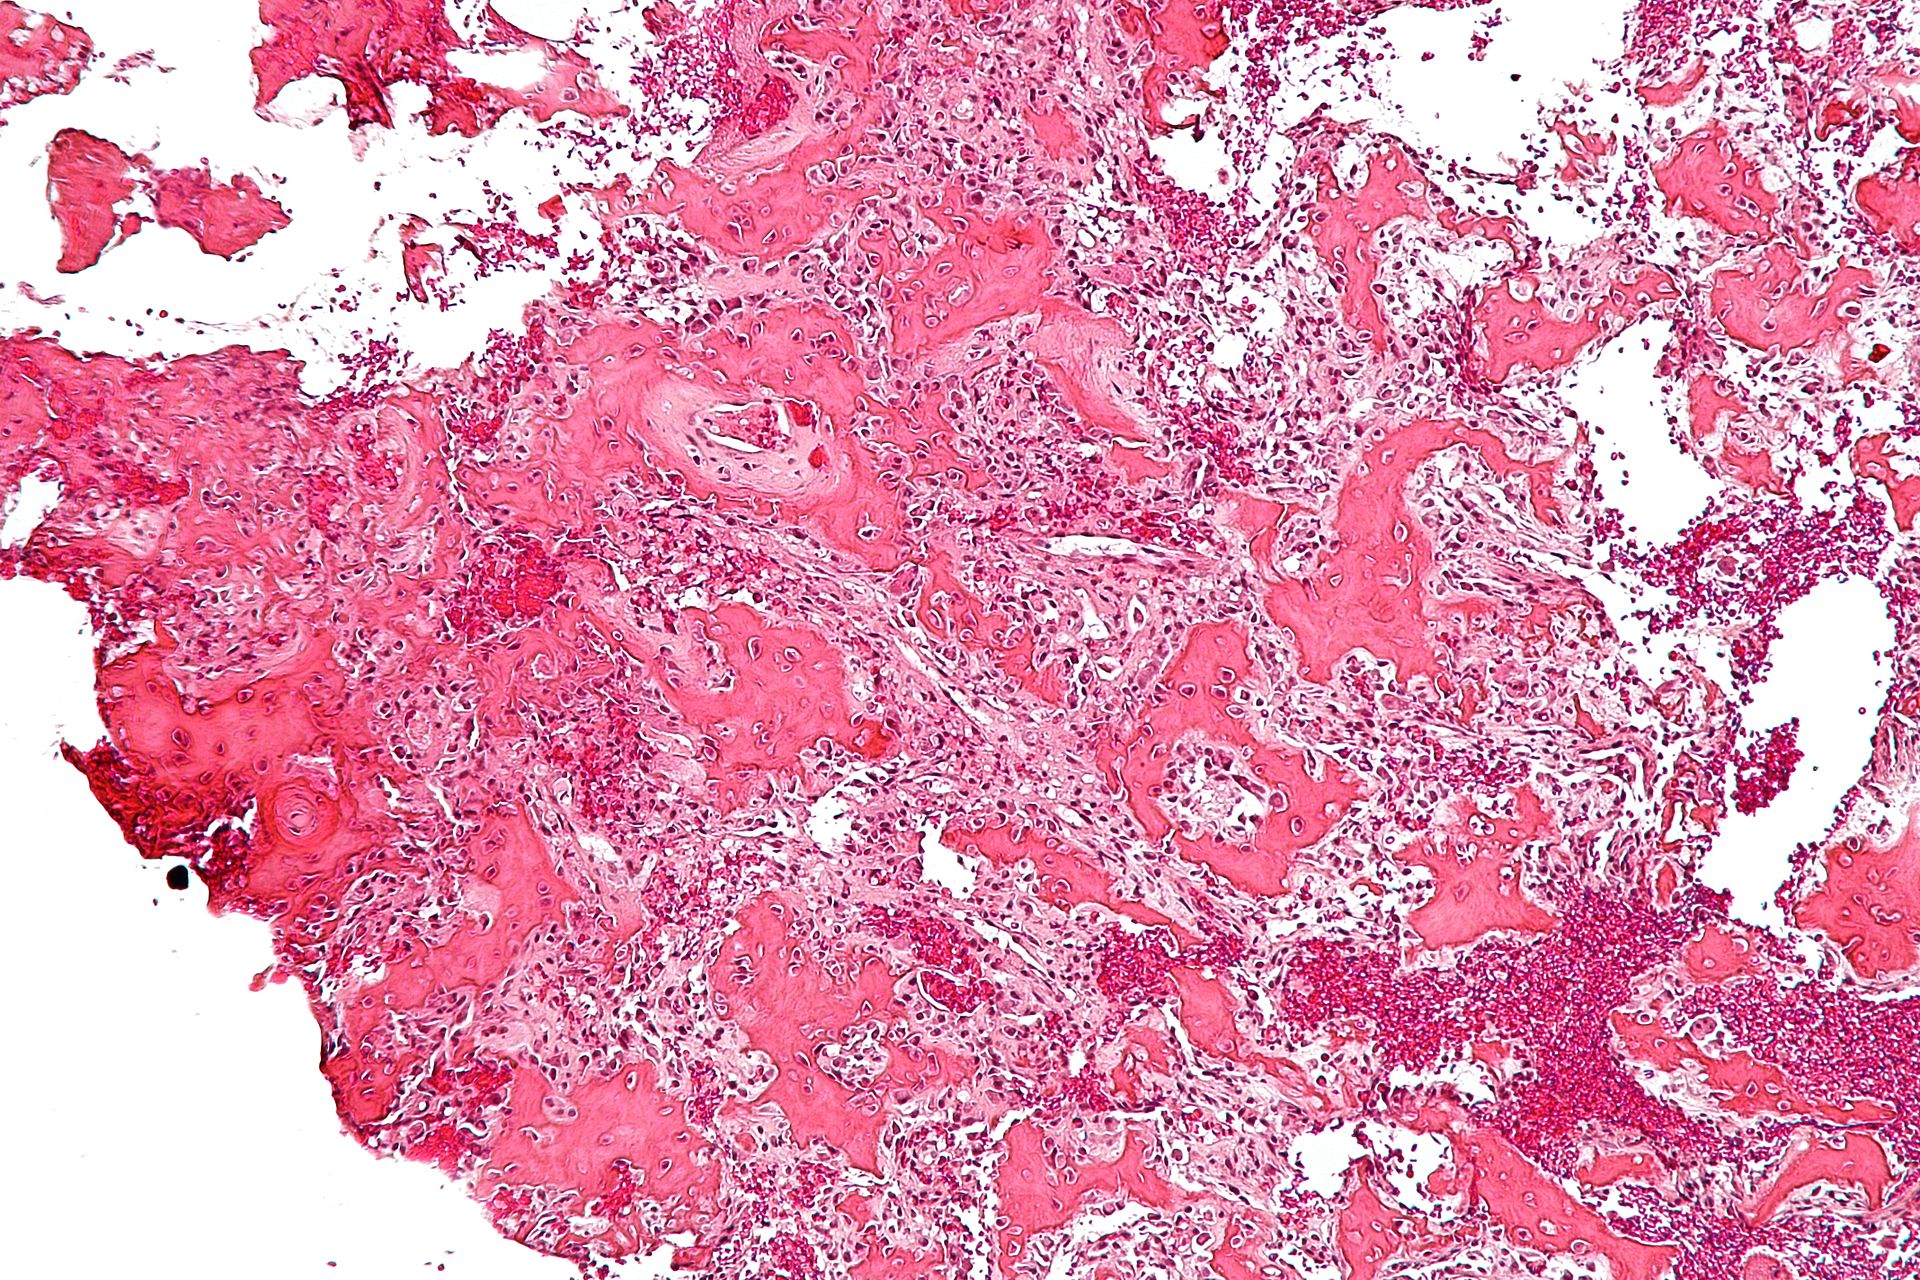 File:Osteoidosteoma micrograph.jpeg